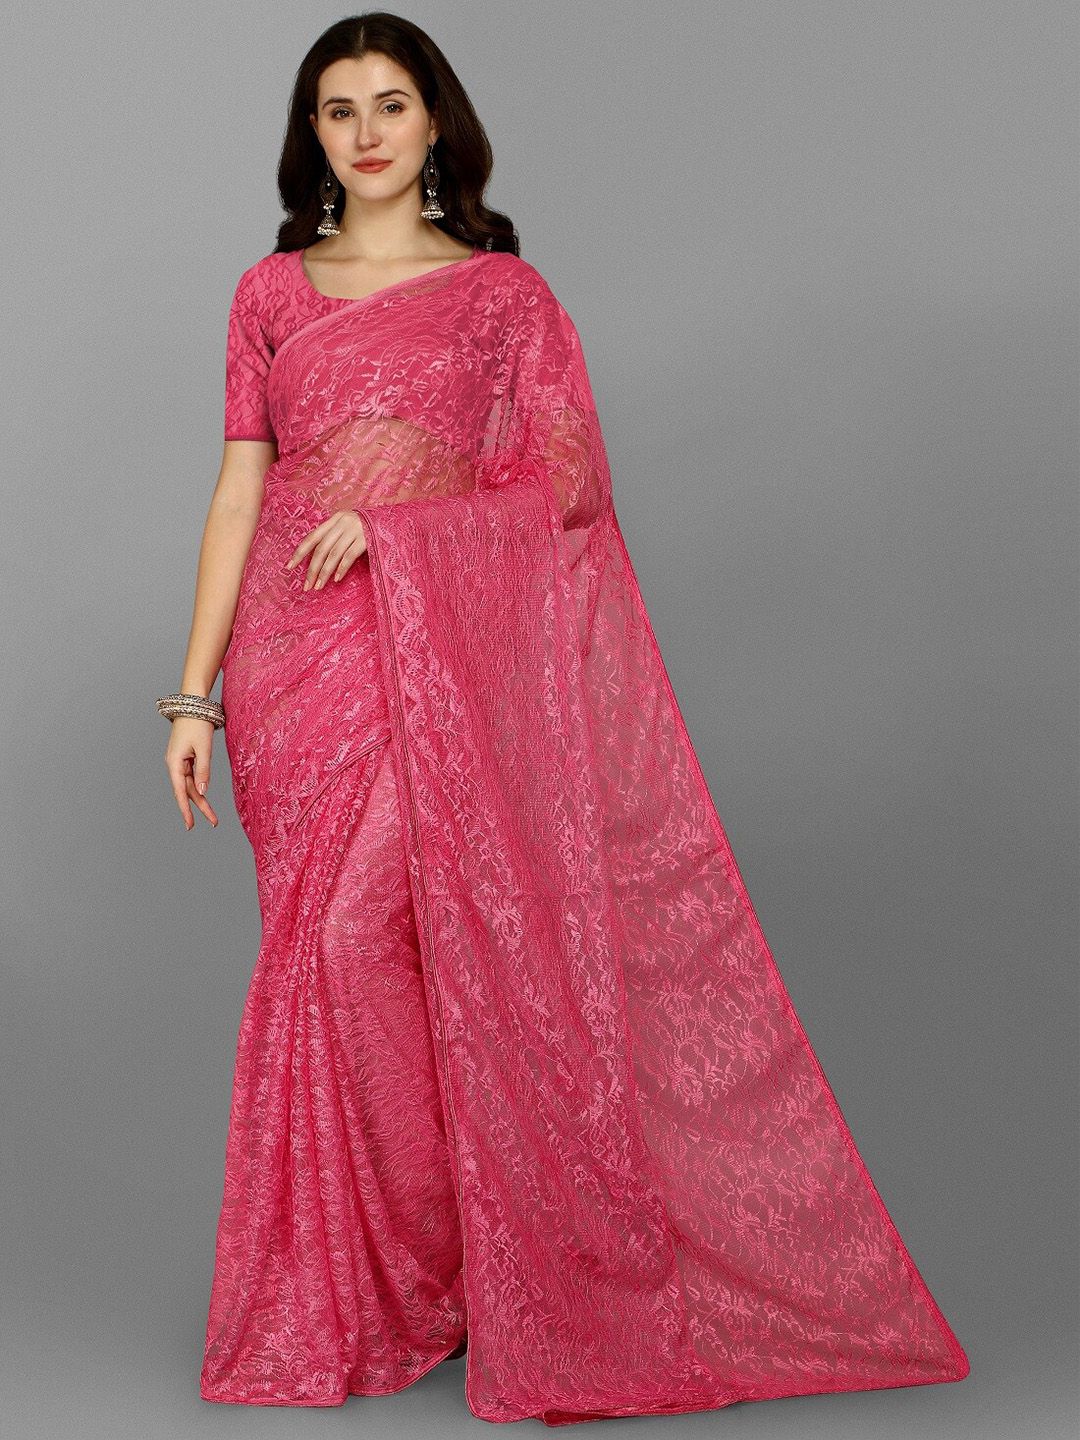 Fashion Basket Pink Embellished Net Saree Price in India